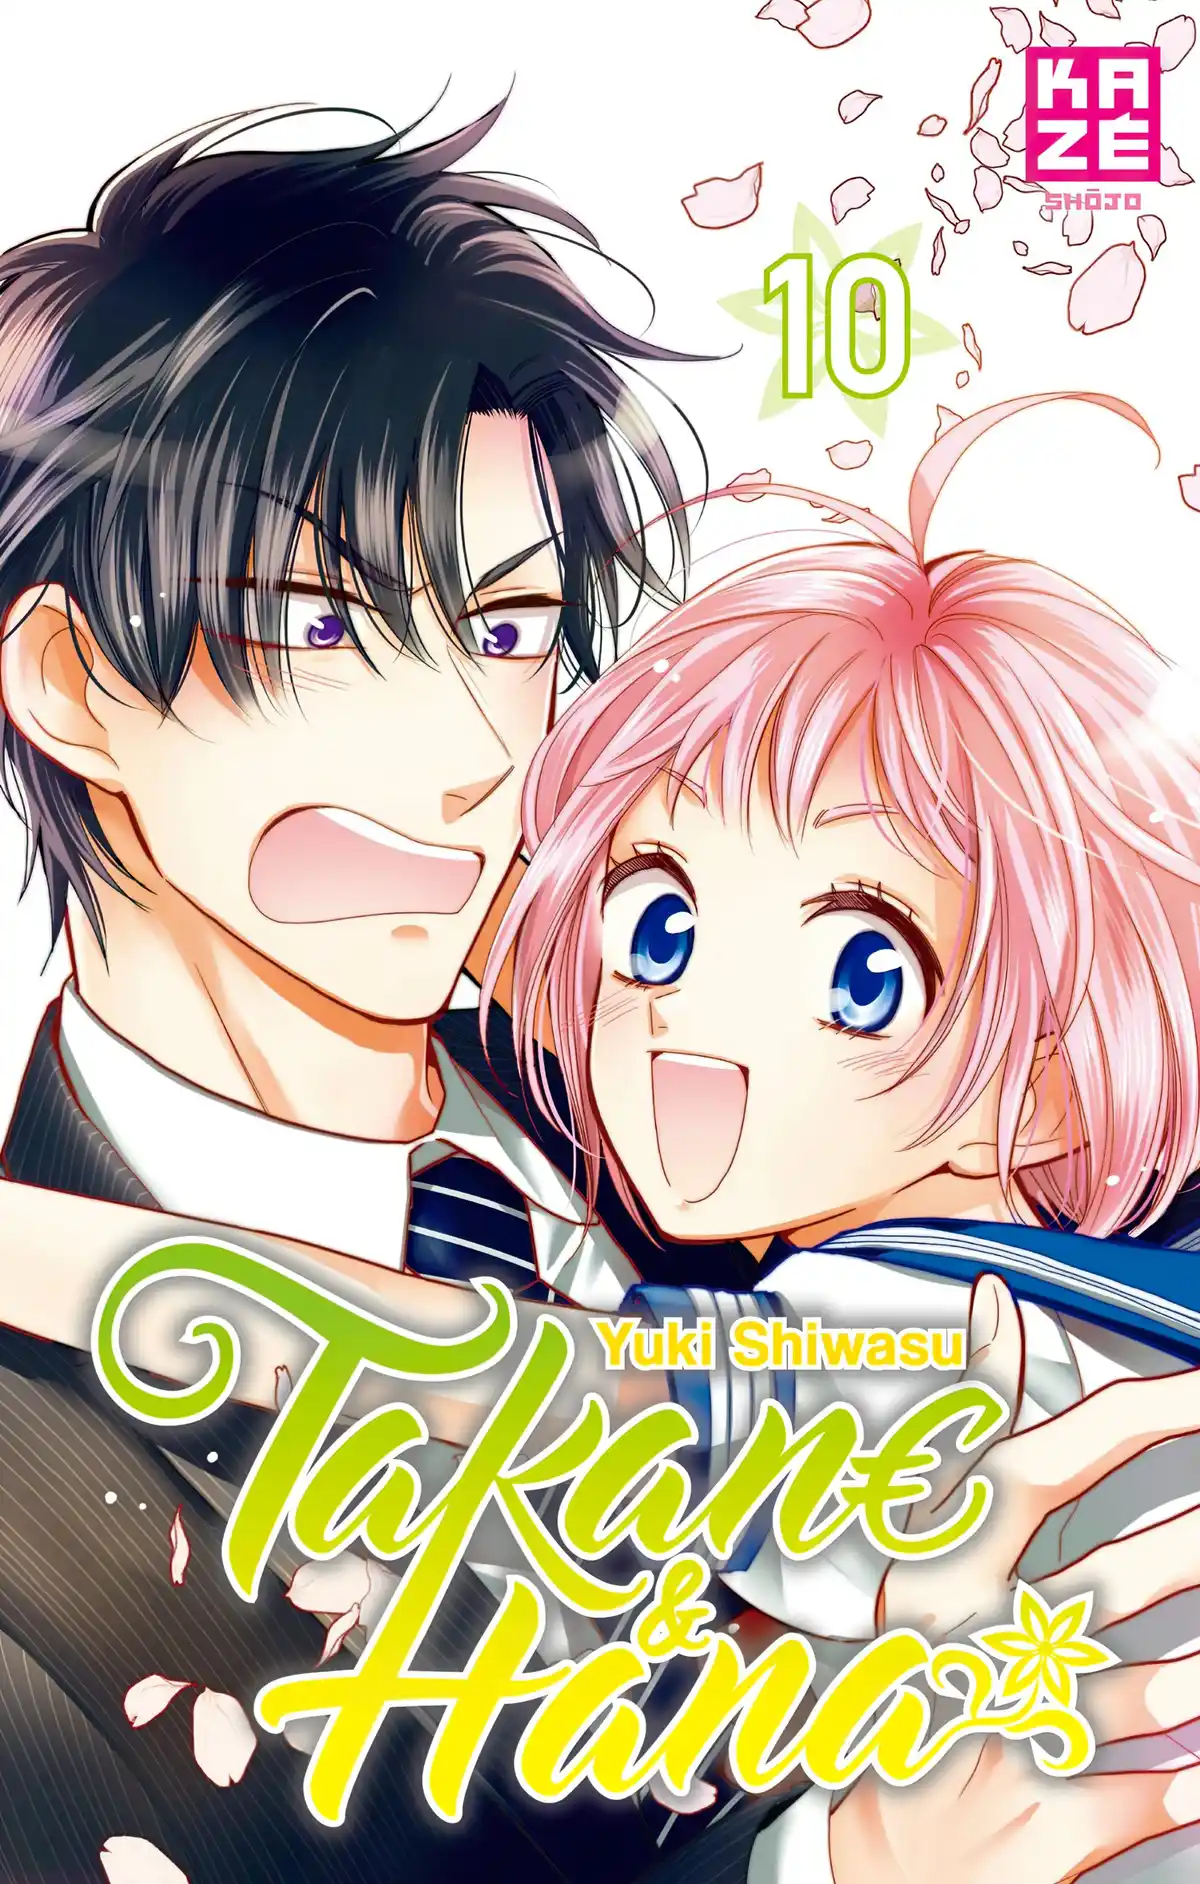 Takane & Hana Volume 10 page 1